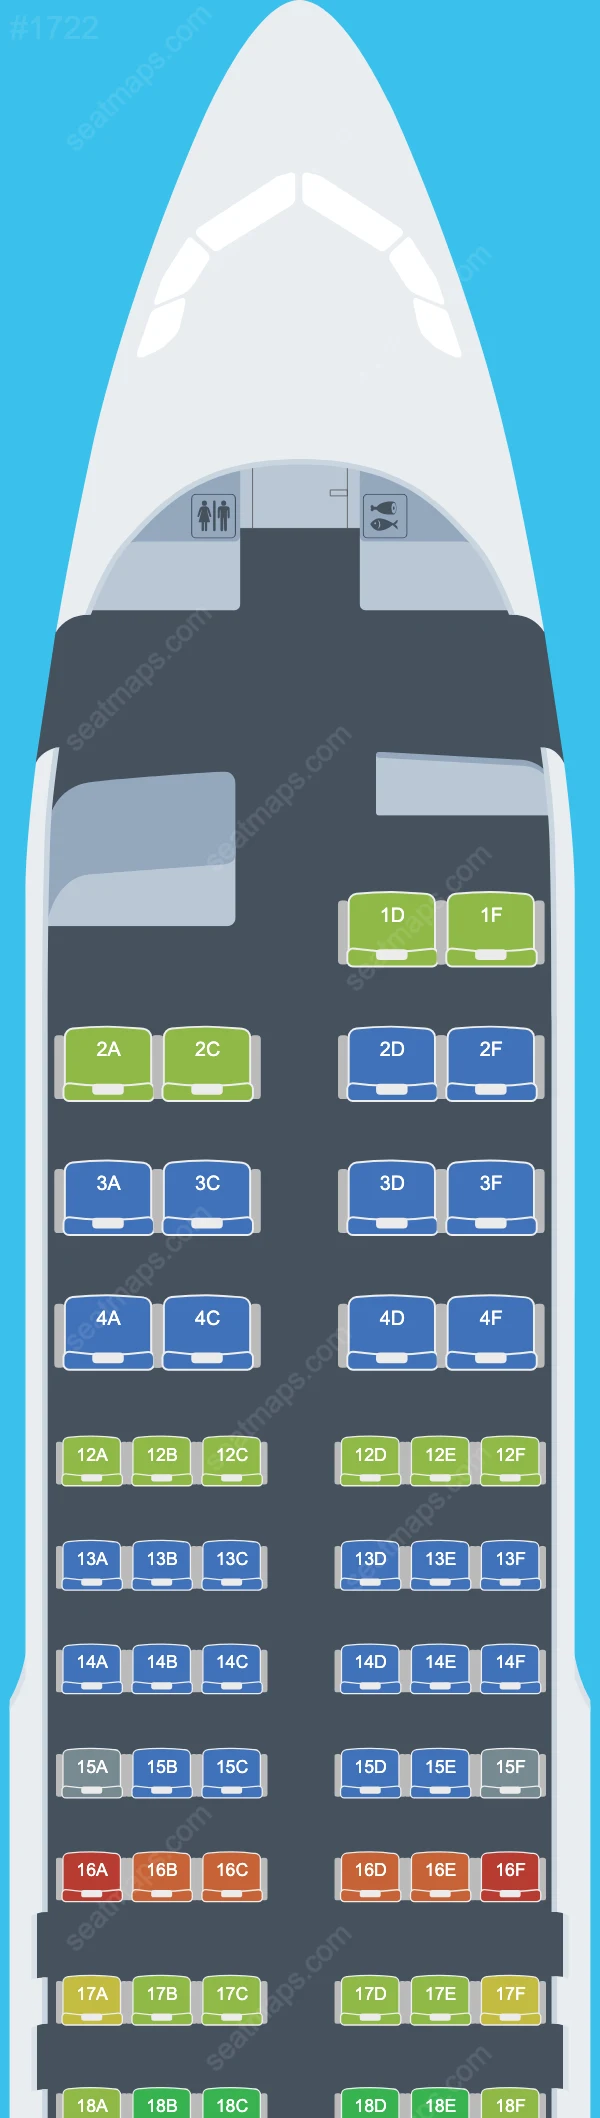 Air Canada Airbus A320 Seat Maps A320-200 V.1